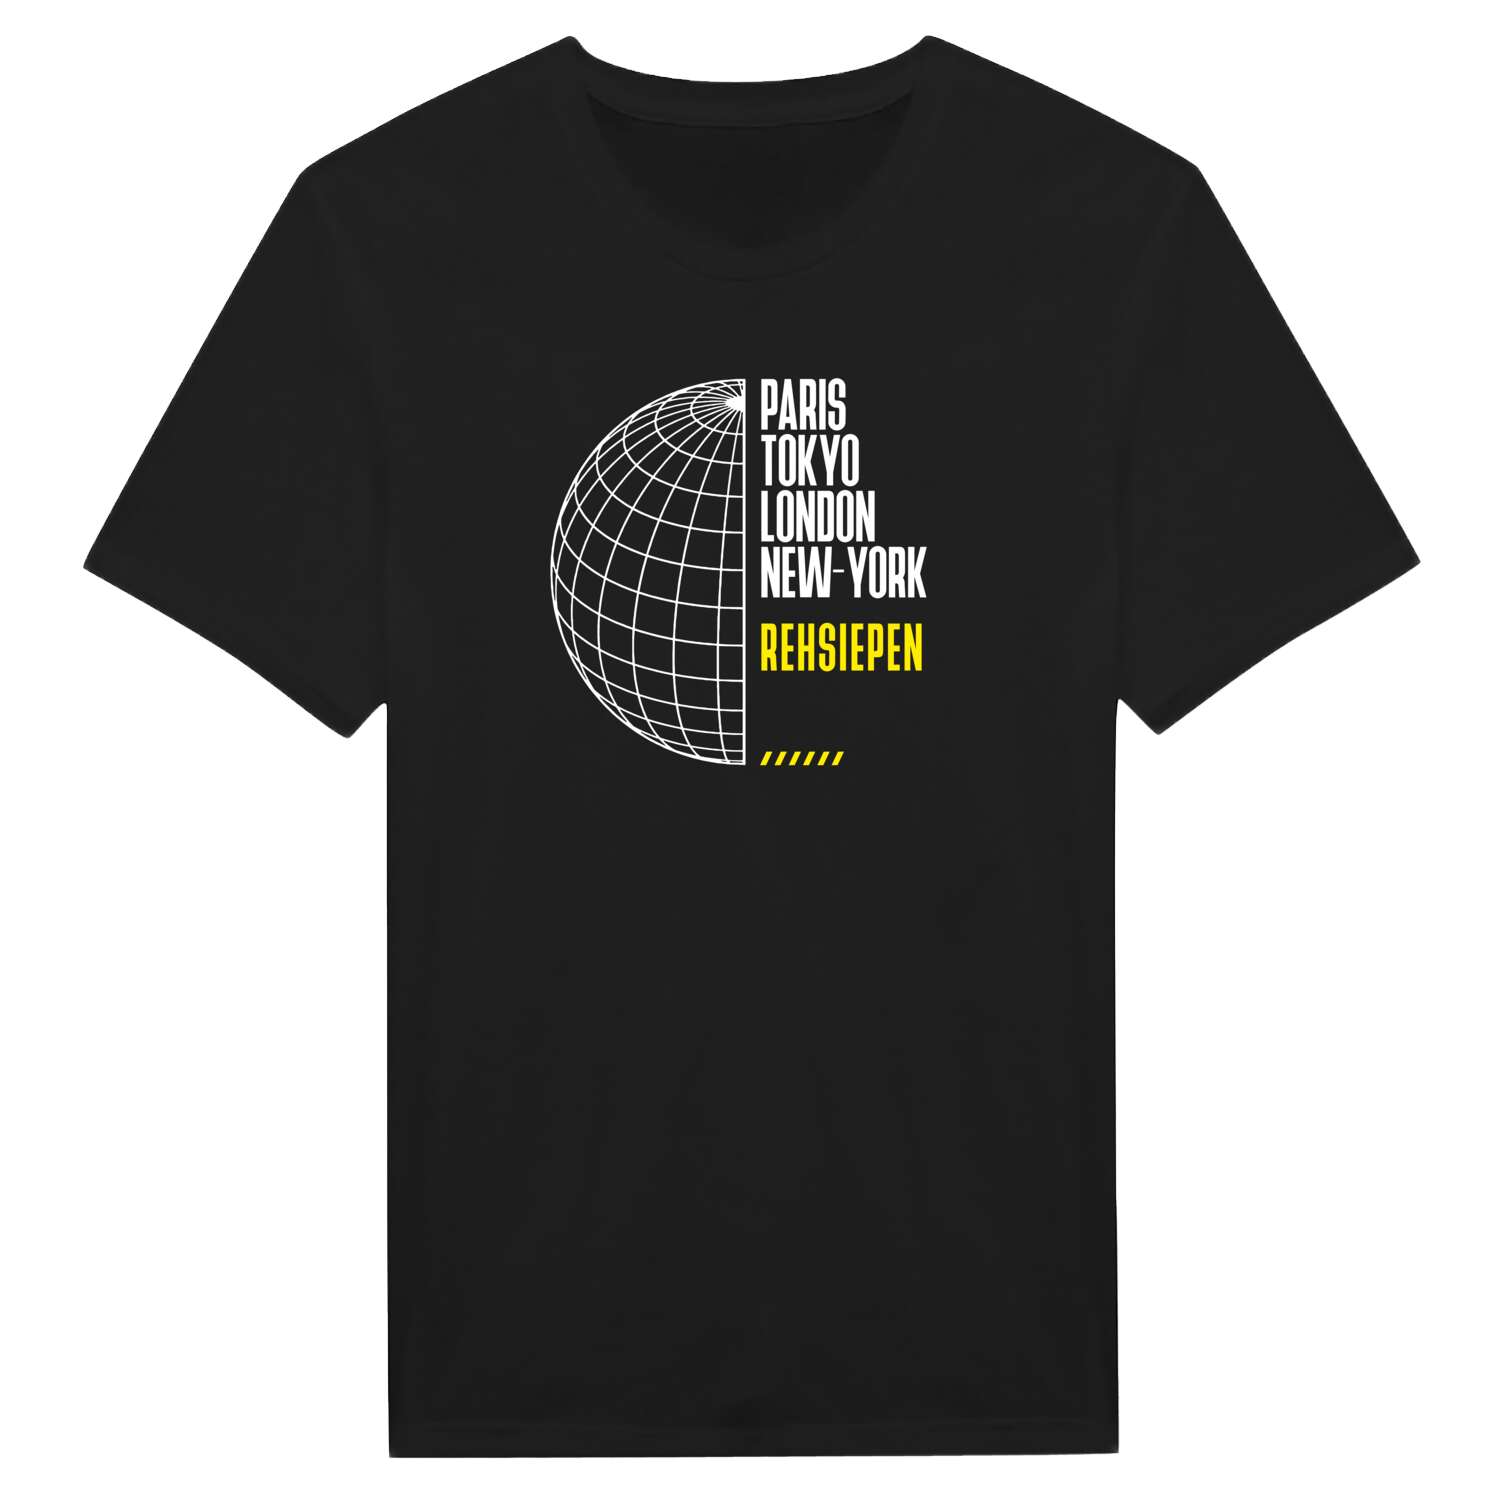 Rehsiepen T-Shirt »Paris Tokyo London«